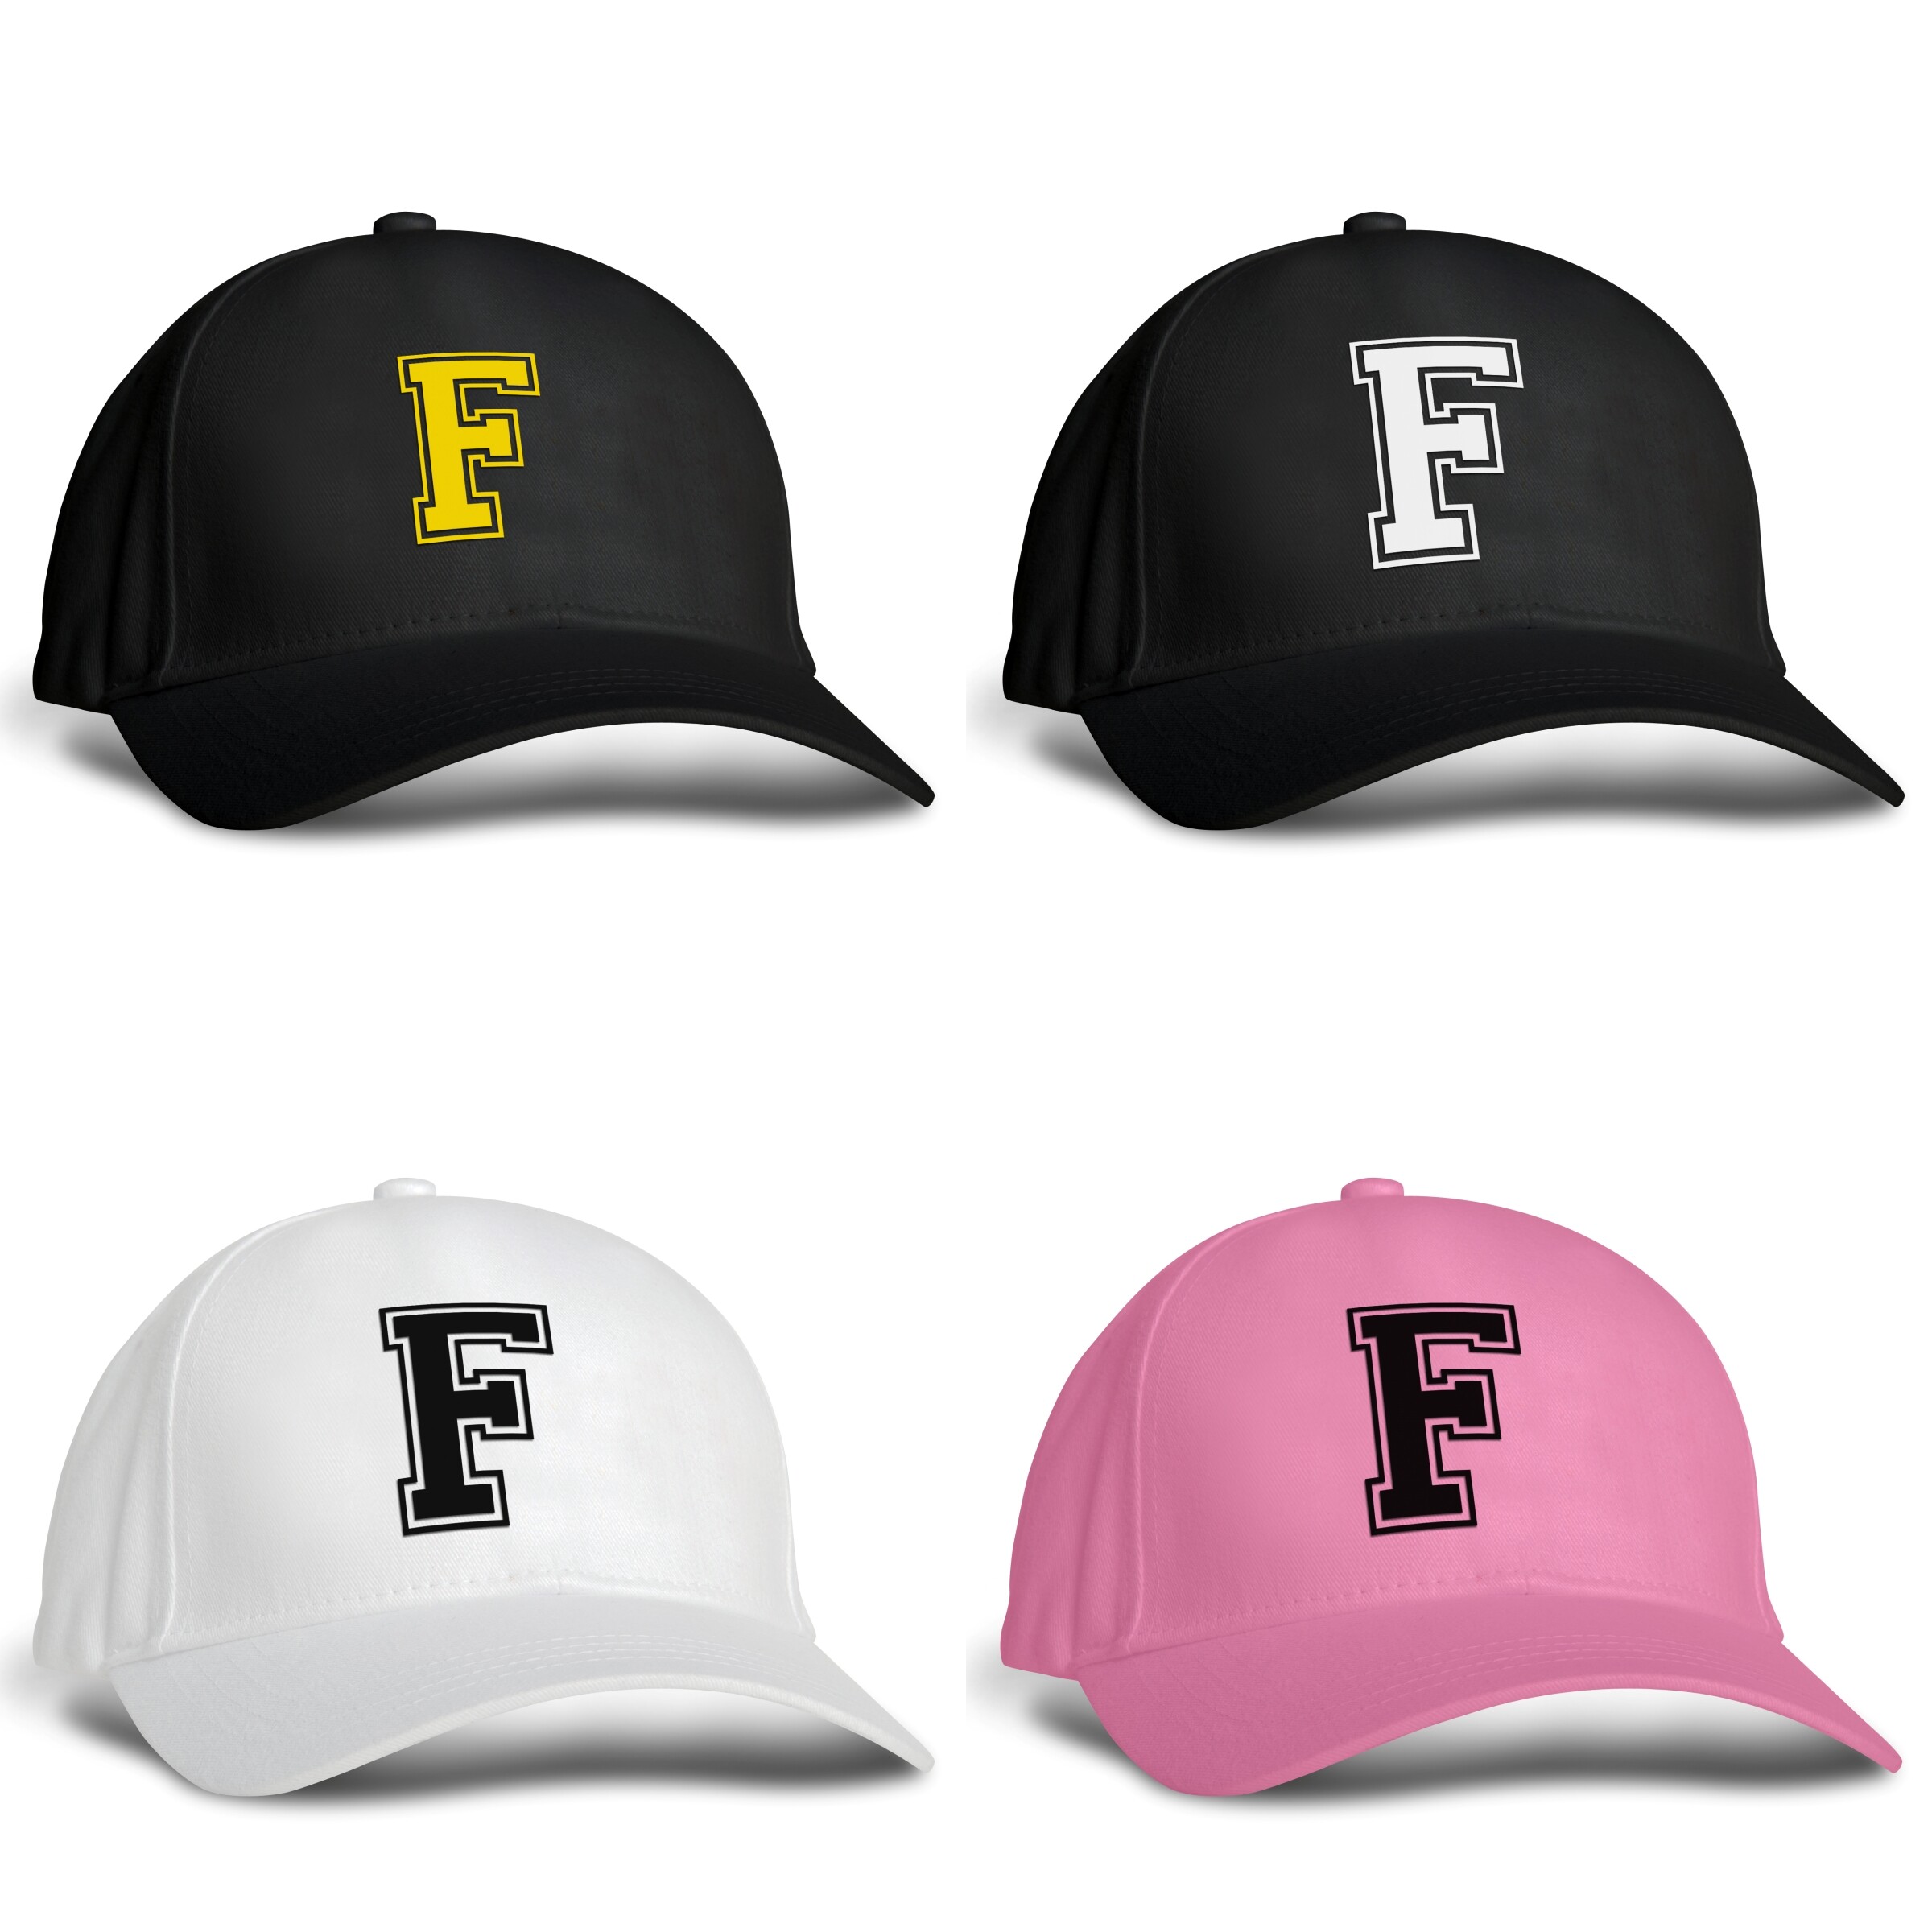 หมวก F หมวกแก๊ป สกรีน ตัวอักษร F หมวกเบสบอล หมวกกันแดด หมวกถูก หมวกทีม หมวกผู้ชาย หมวกผู้หญิง หมวกเด็ก หมวกแฟชั่น